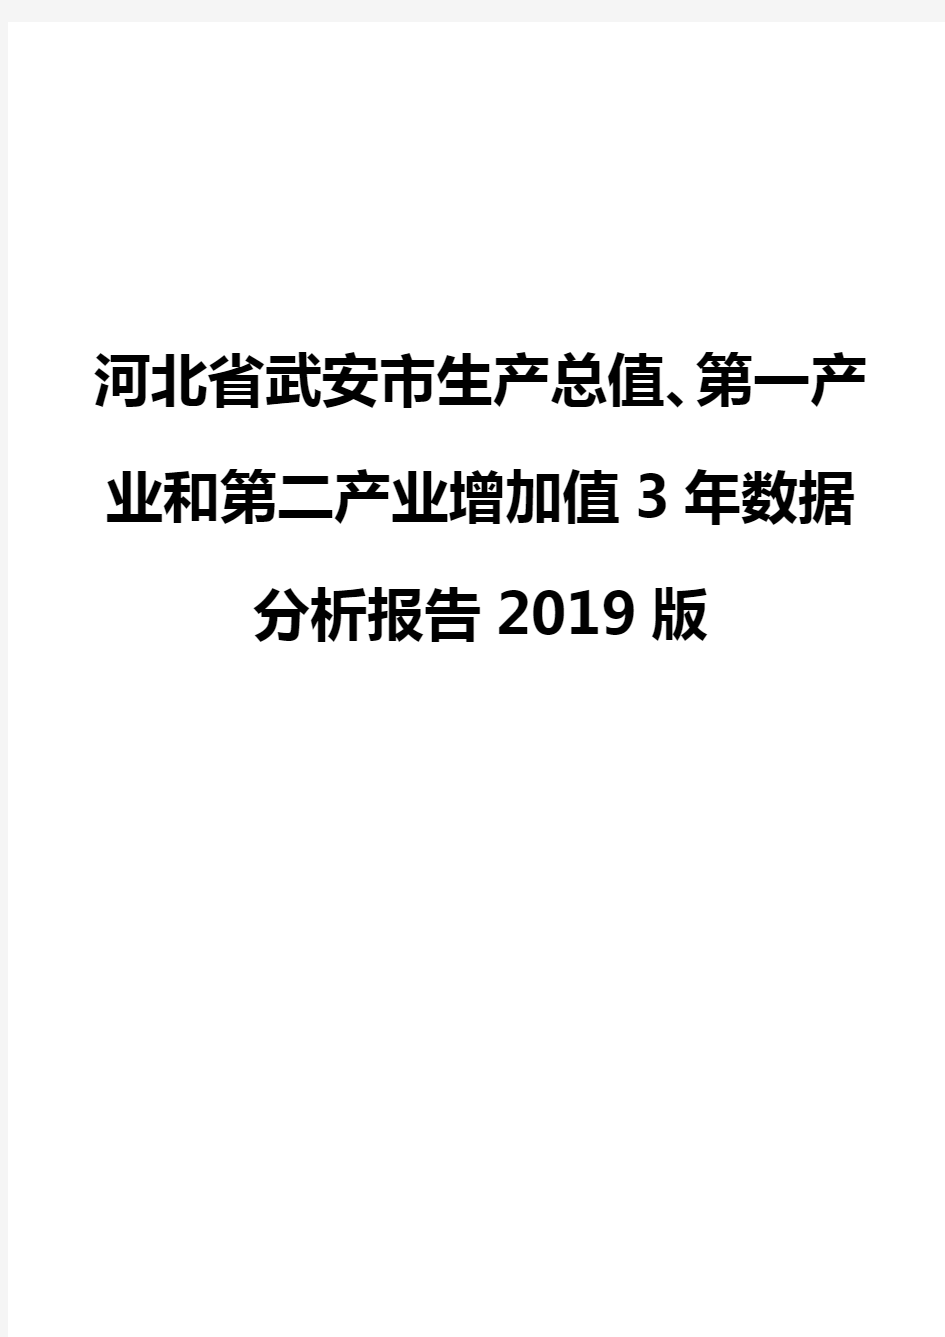 河北省武安市生产总值、第一产业和第二产业增加值3年数据分析报告2019版